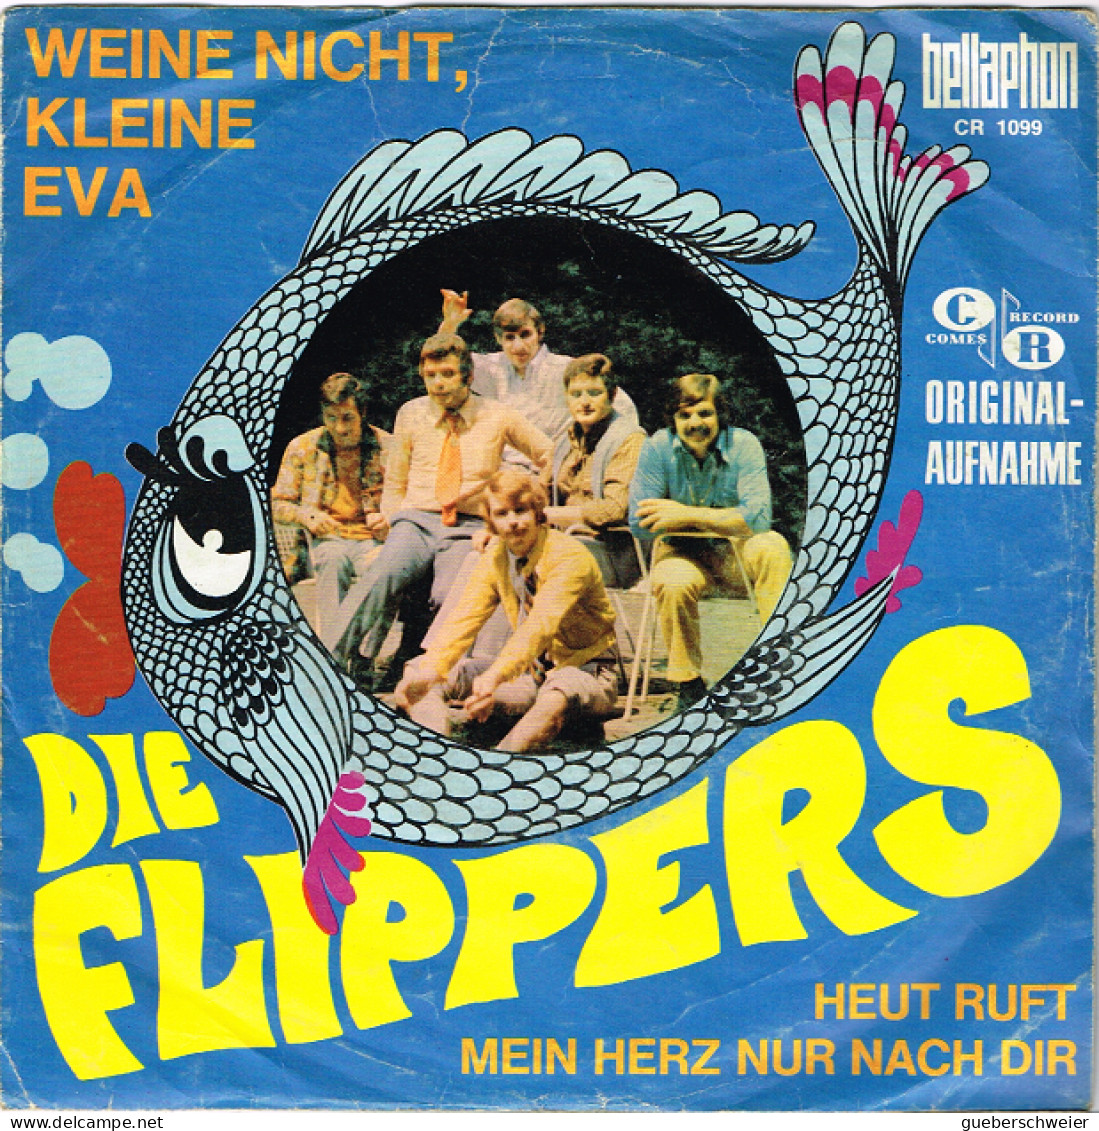 DIE FLIPPERS 45 Tours EP - Weine Nicht Kleine Eva - Heute Ruft Mein Herz Nur Nach Dich - Sonstige - Deutsche Musik